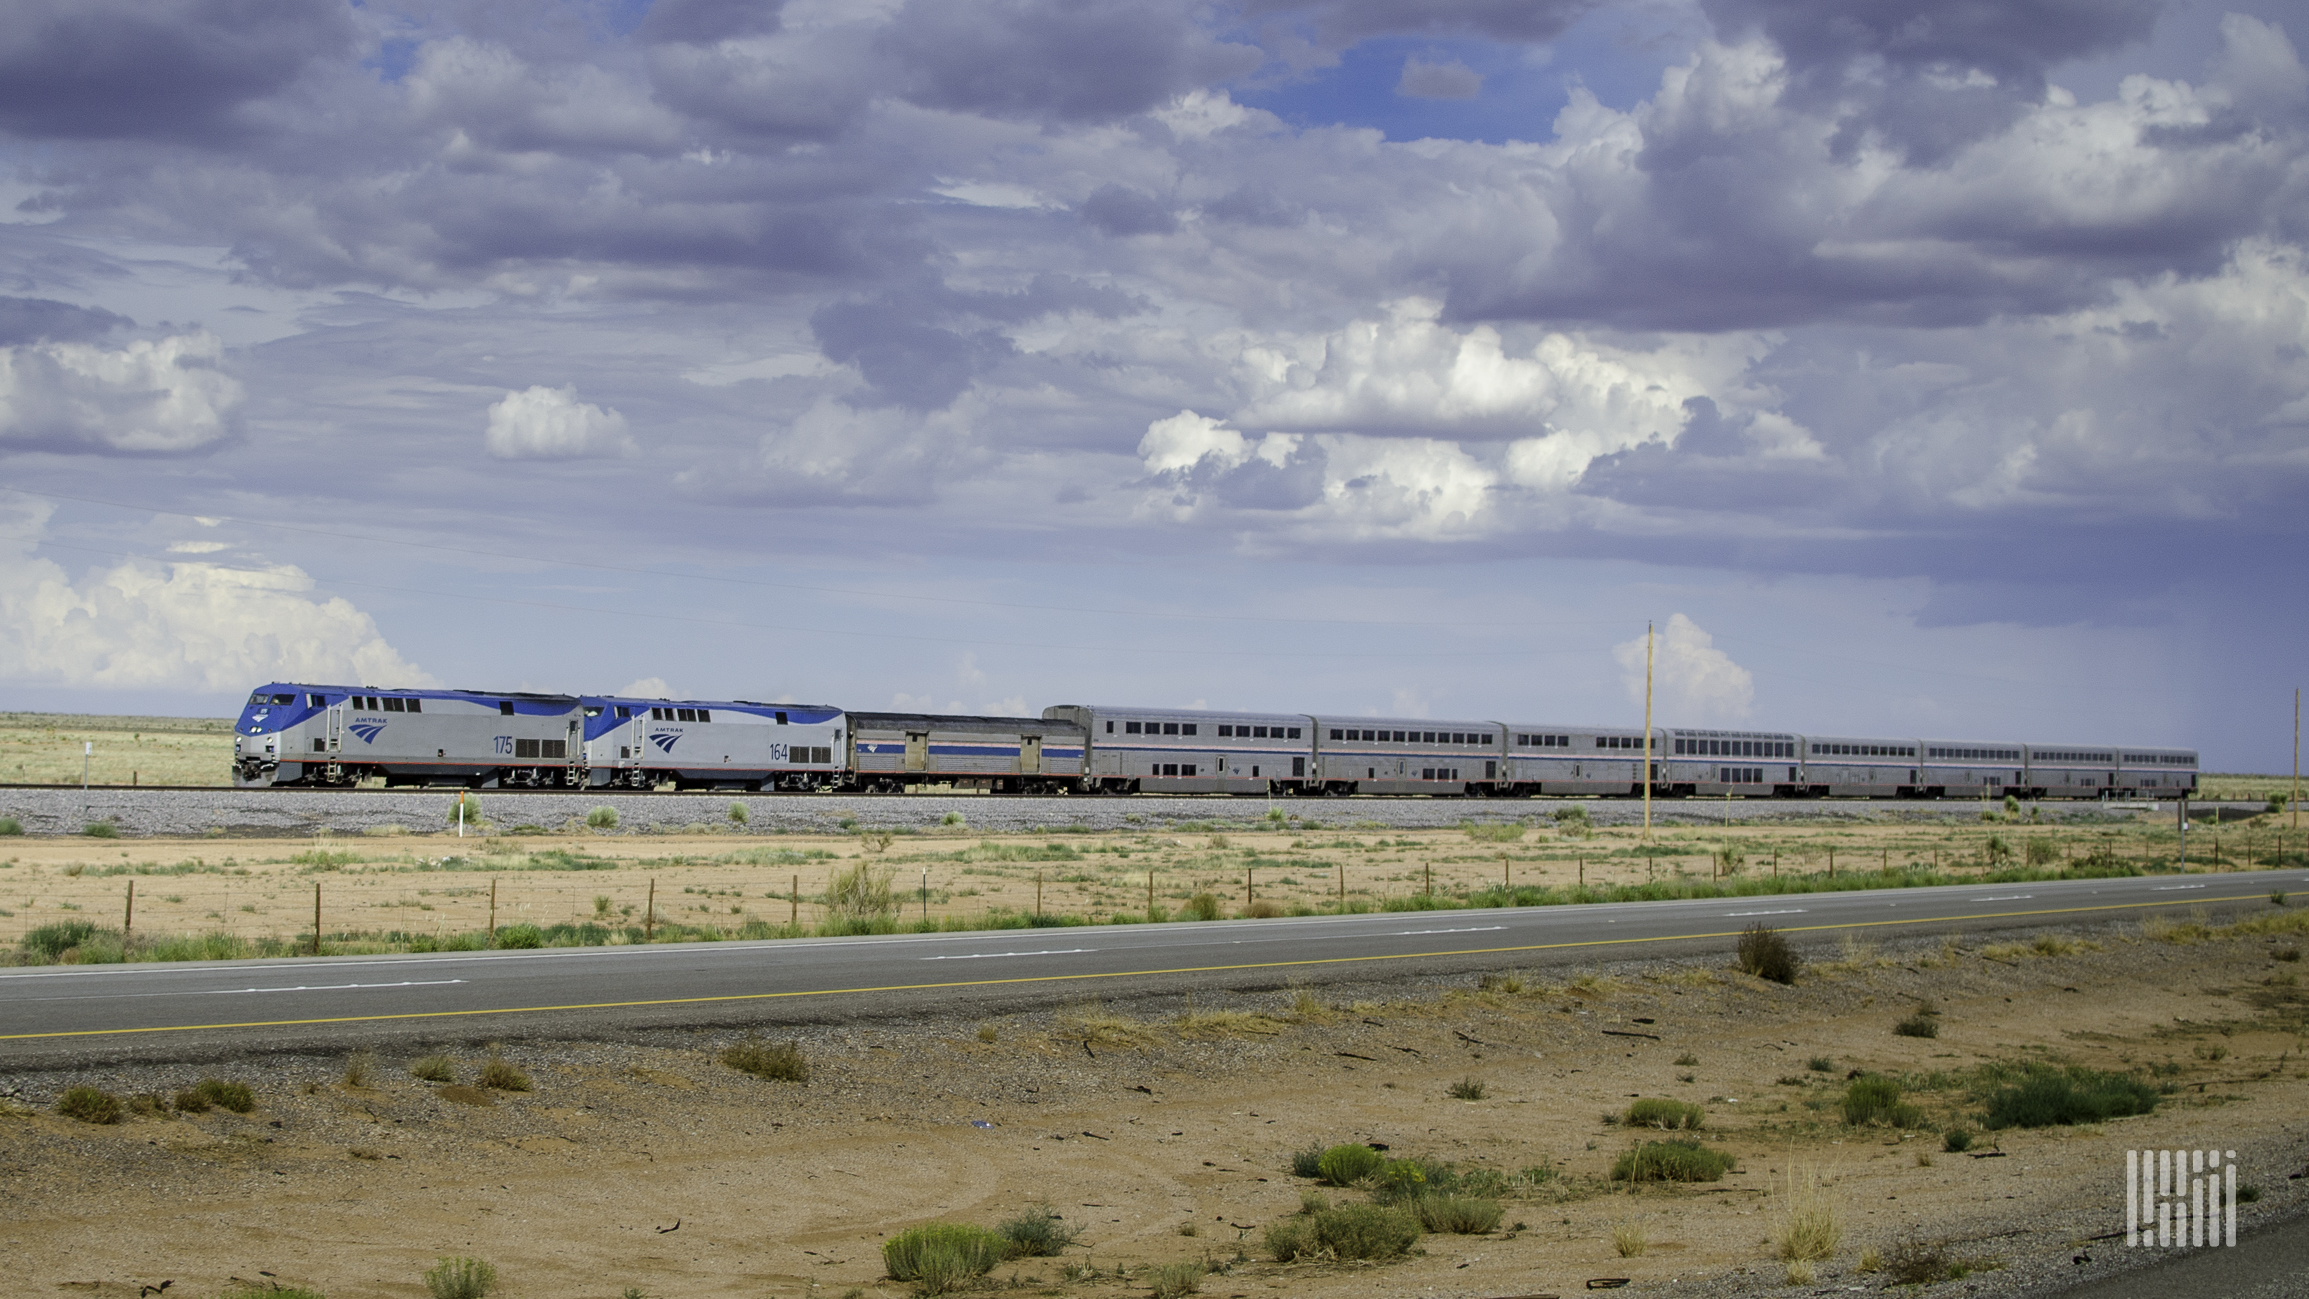 A photograph of an Amtrak train crossing a desert field.